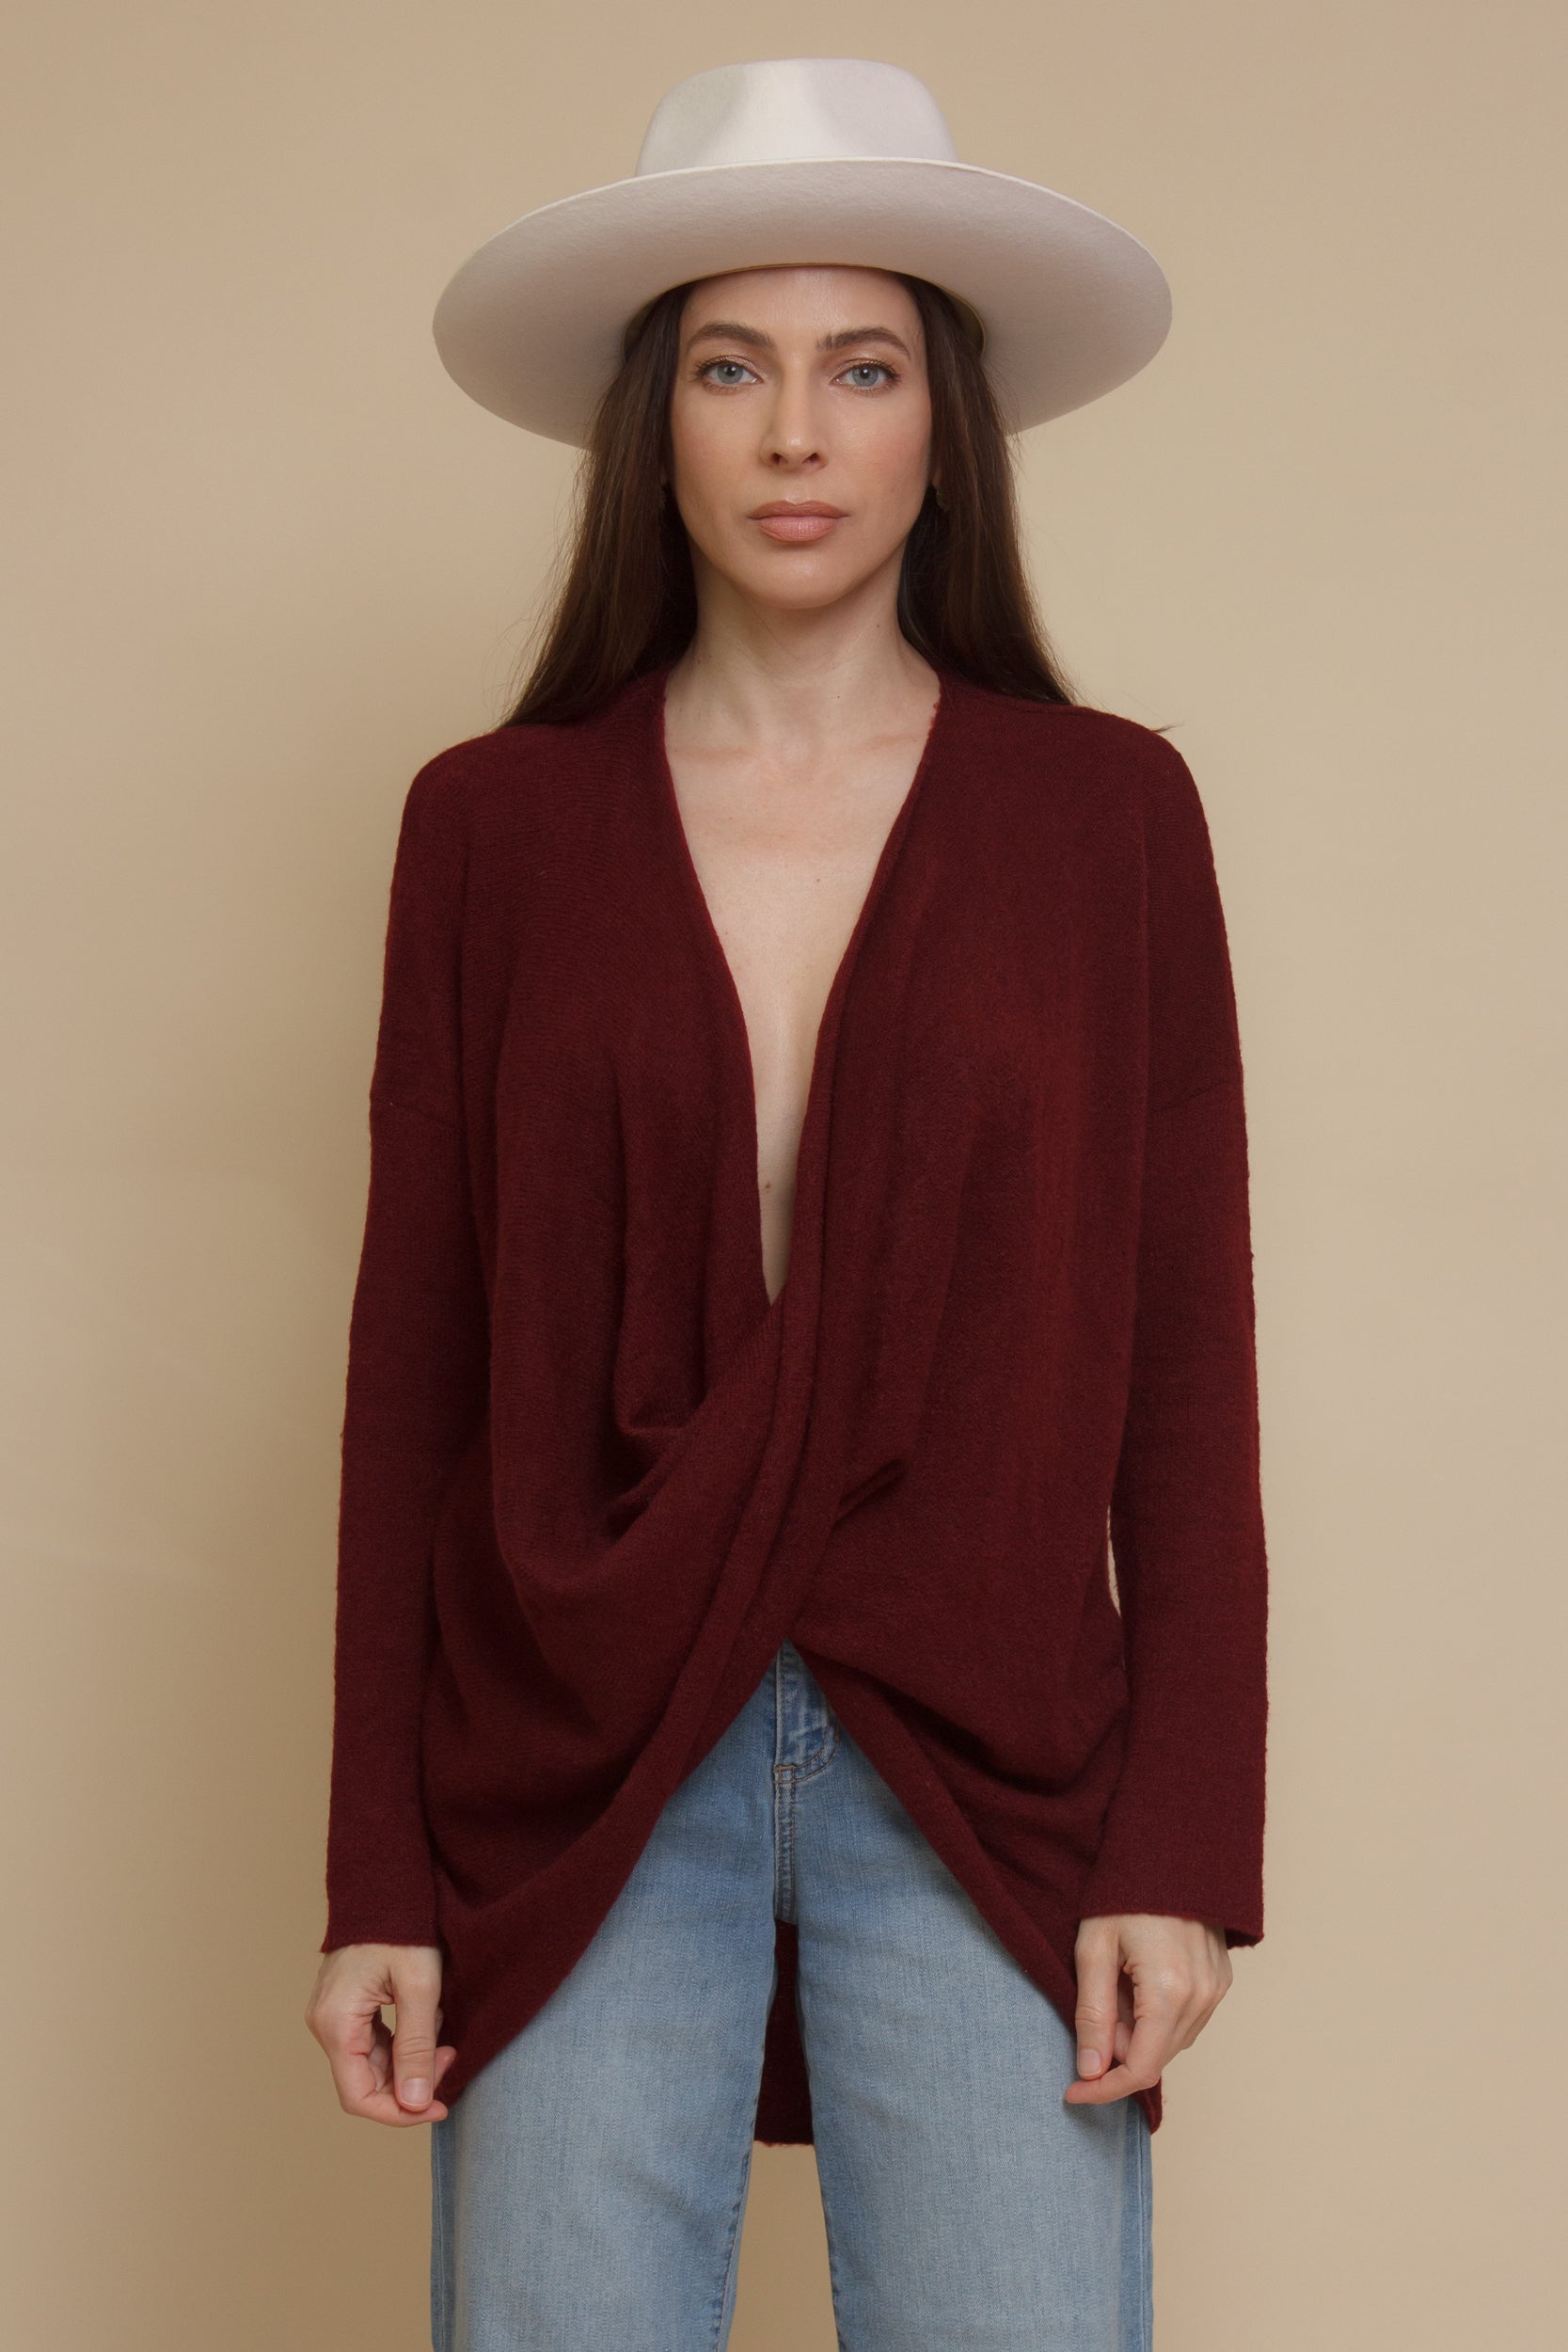 Hem & Thread twist front sweater, in burgundy.